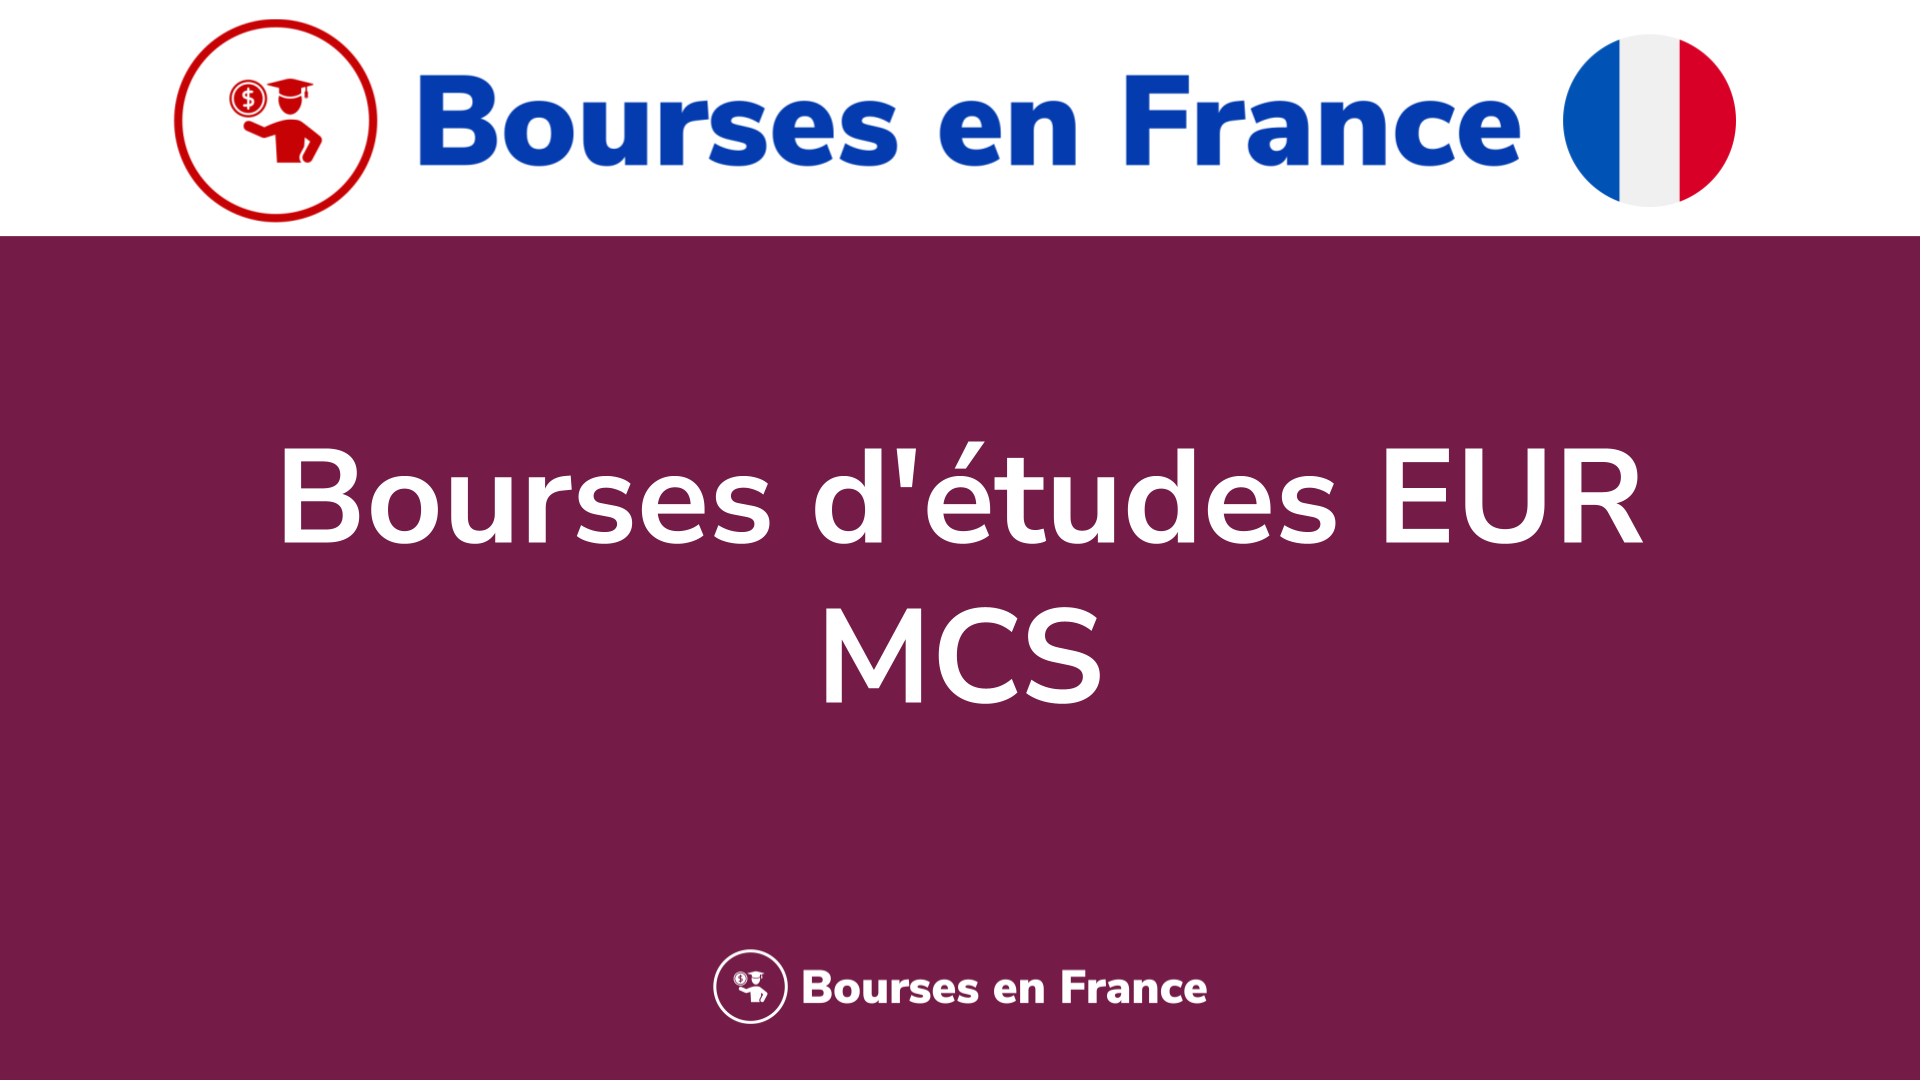 Bourses d'études EUR MCS